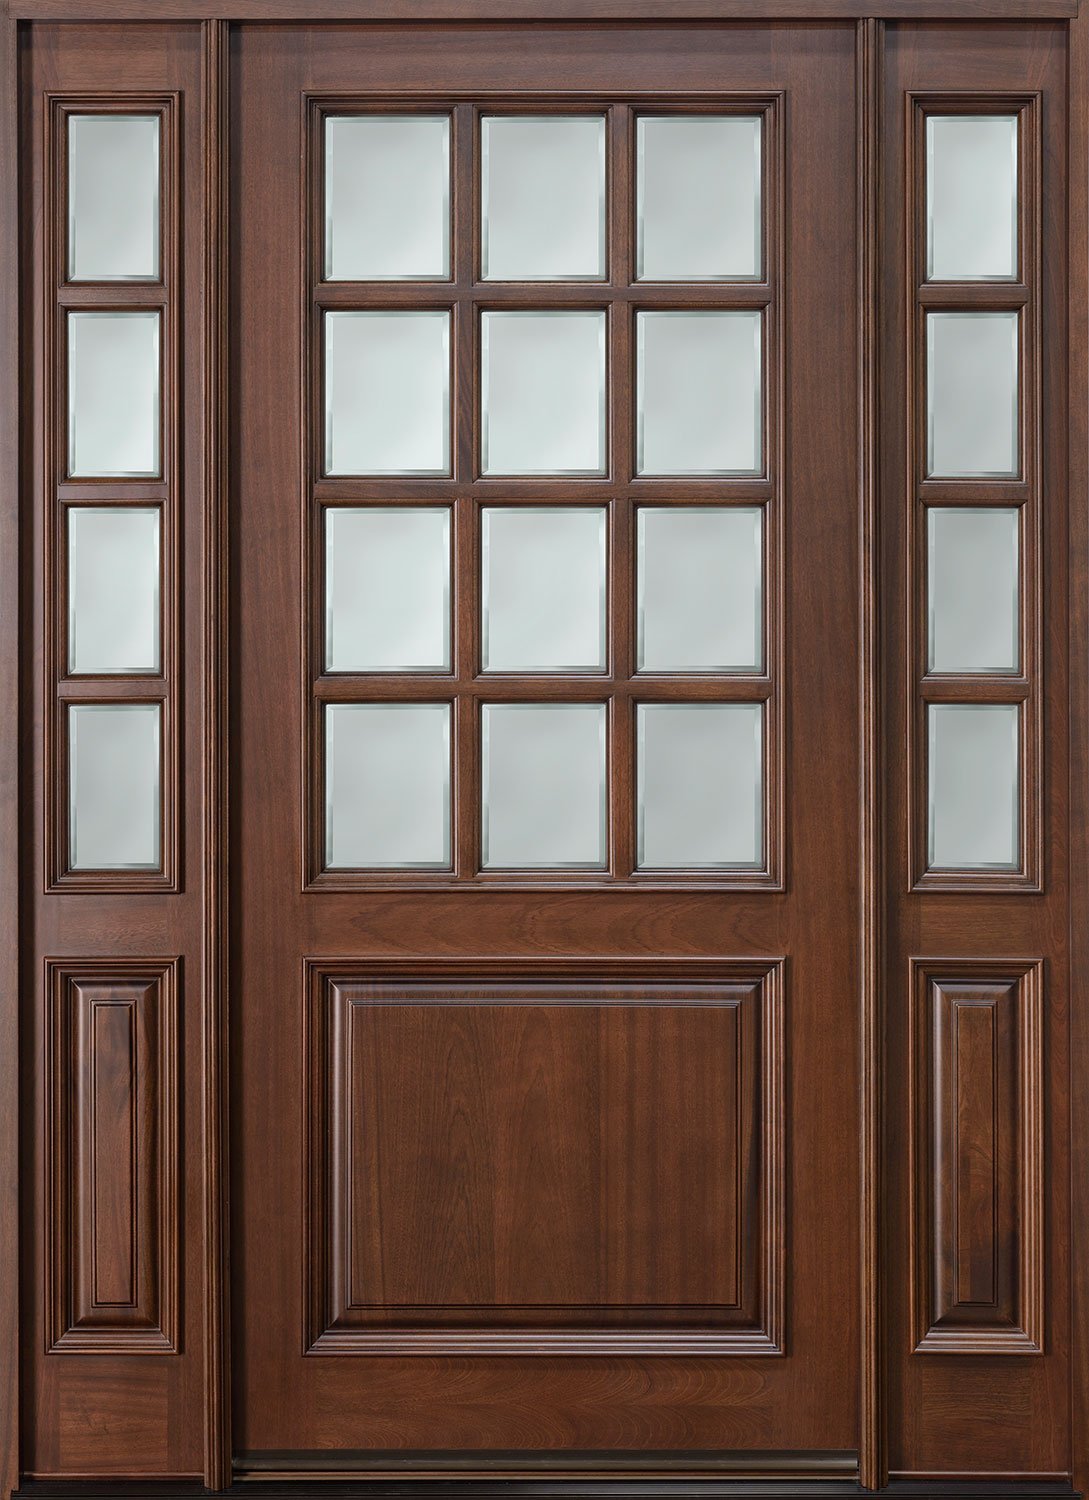 Doors 2 двери. Текстура двери. Дверь деревянная коричневая. Текстура деревянной двери. Деревянная дверь со стеклом.